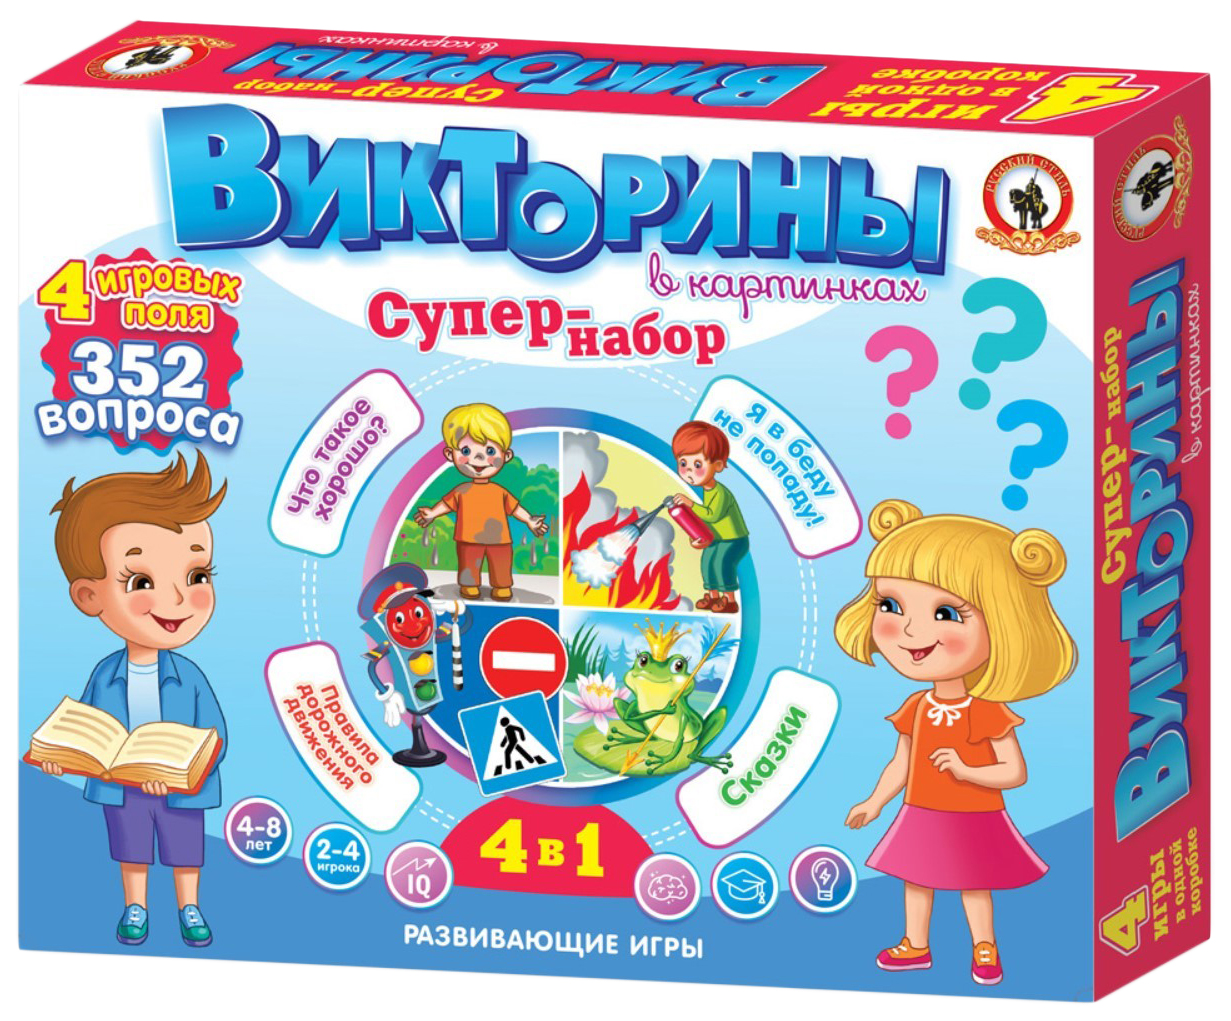 В одном наборе 4 1 2. Викторины в картинках супер-набор 4в1. Русские настольные игры. Викторины настольные игры для всей семьи.